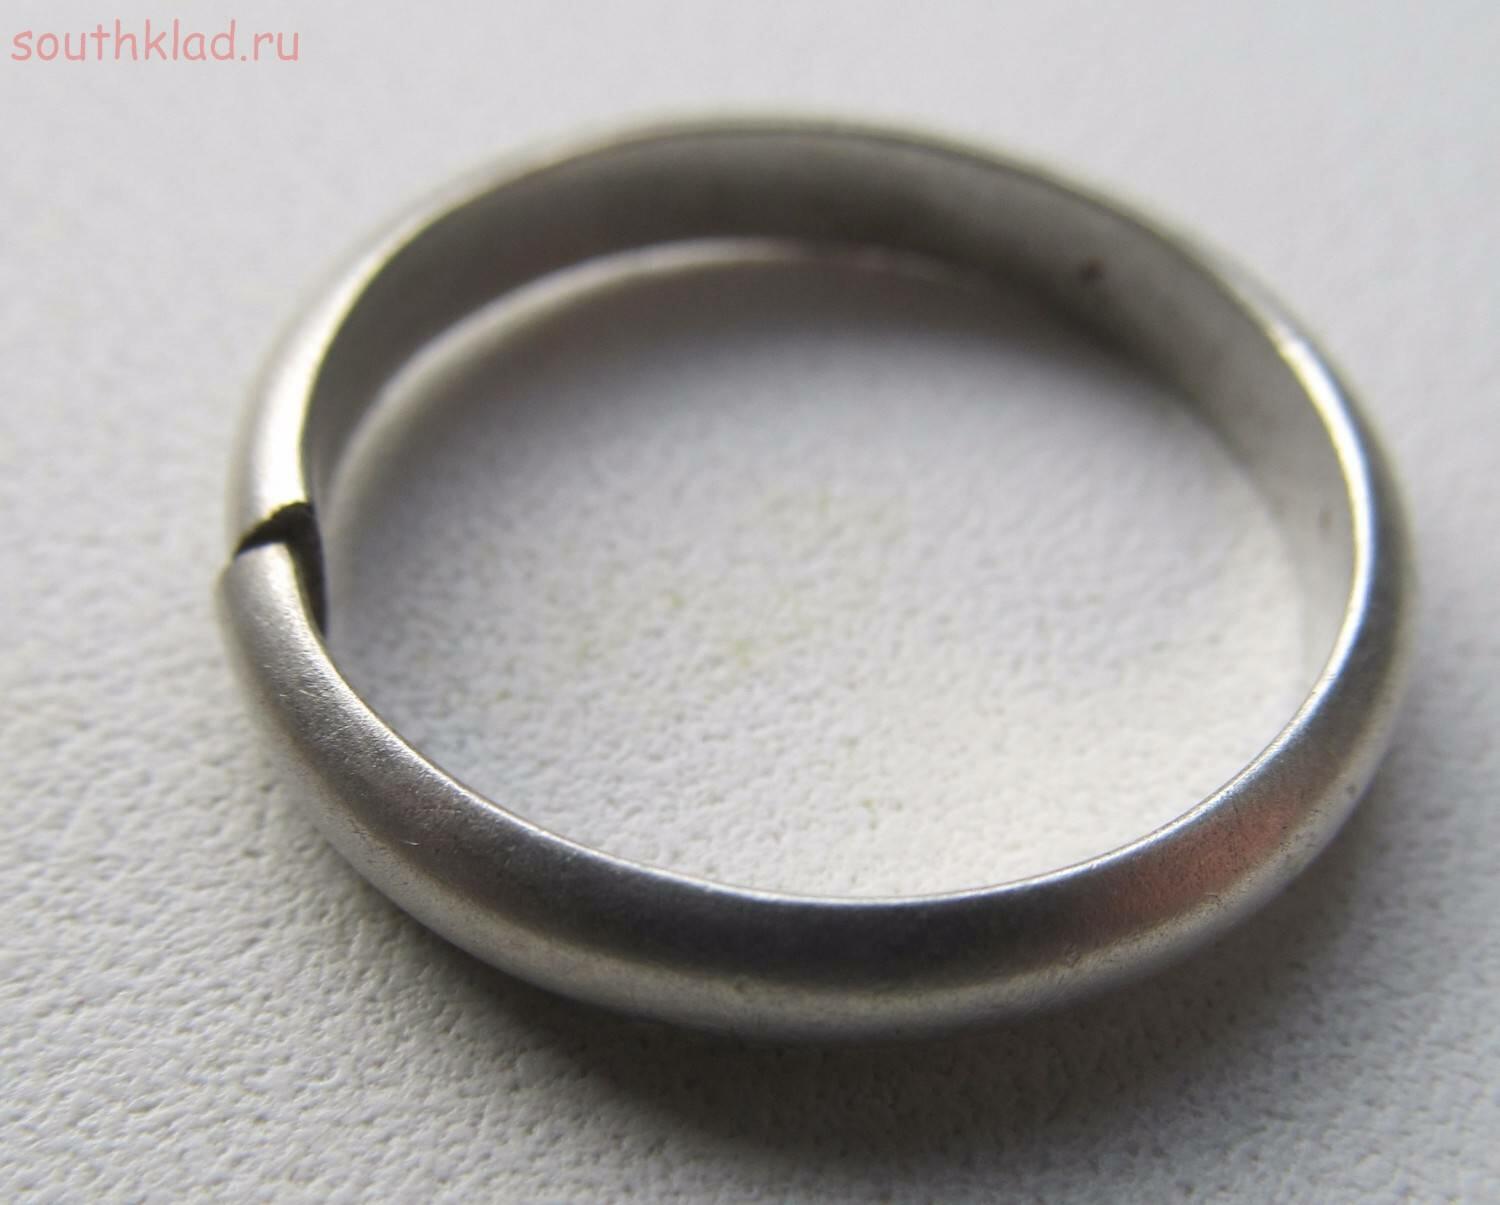 Кольцо трещина. Сломанное серебряное кольцо. Лопнуло кольцо. Поломанное кольцо. Починить серебряное кольцо.